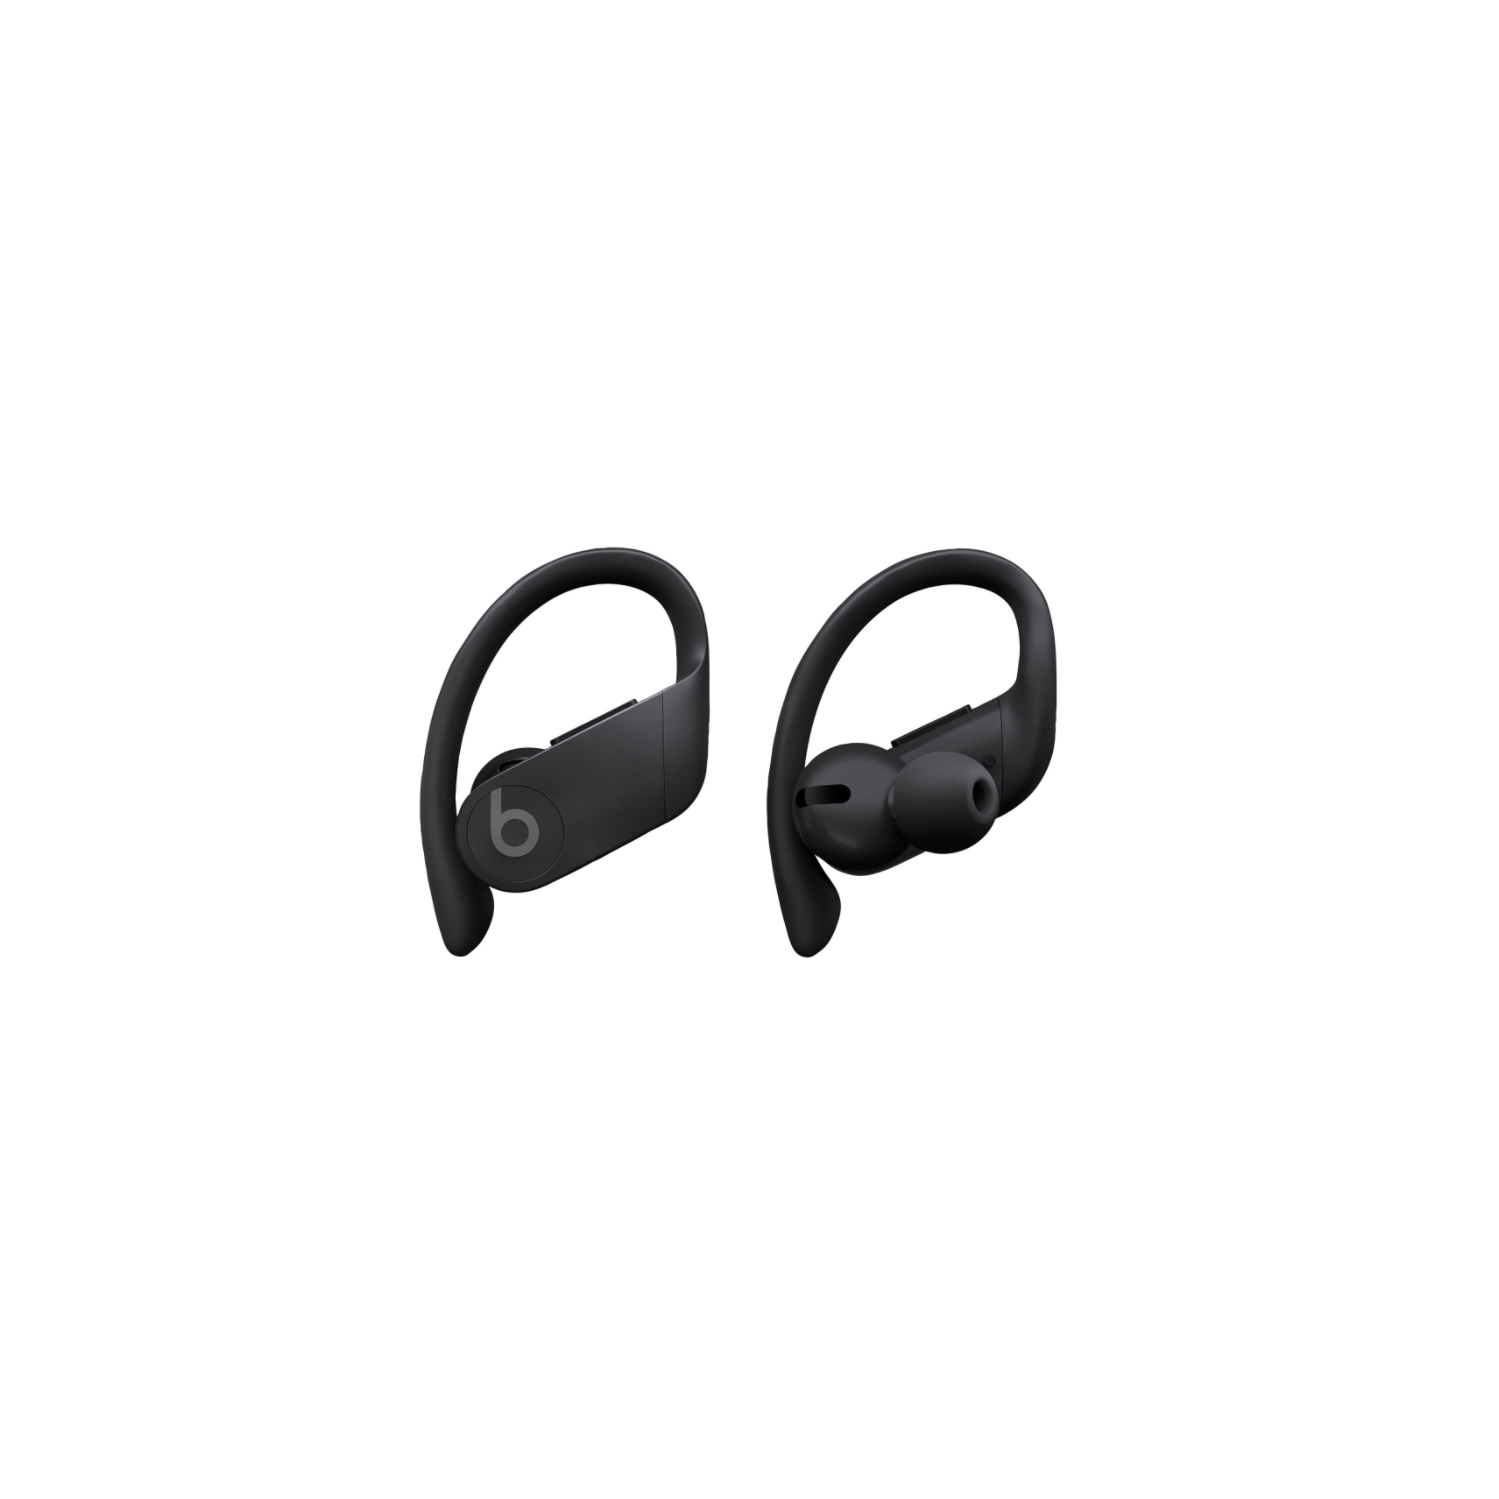 Beats by Dr. Dre Powerbeats Pro In-Ear Truly Wireless Headphones MY582LL/A  - Black - Open Box